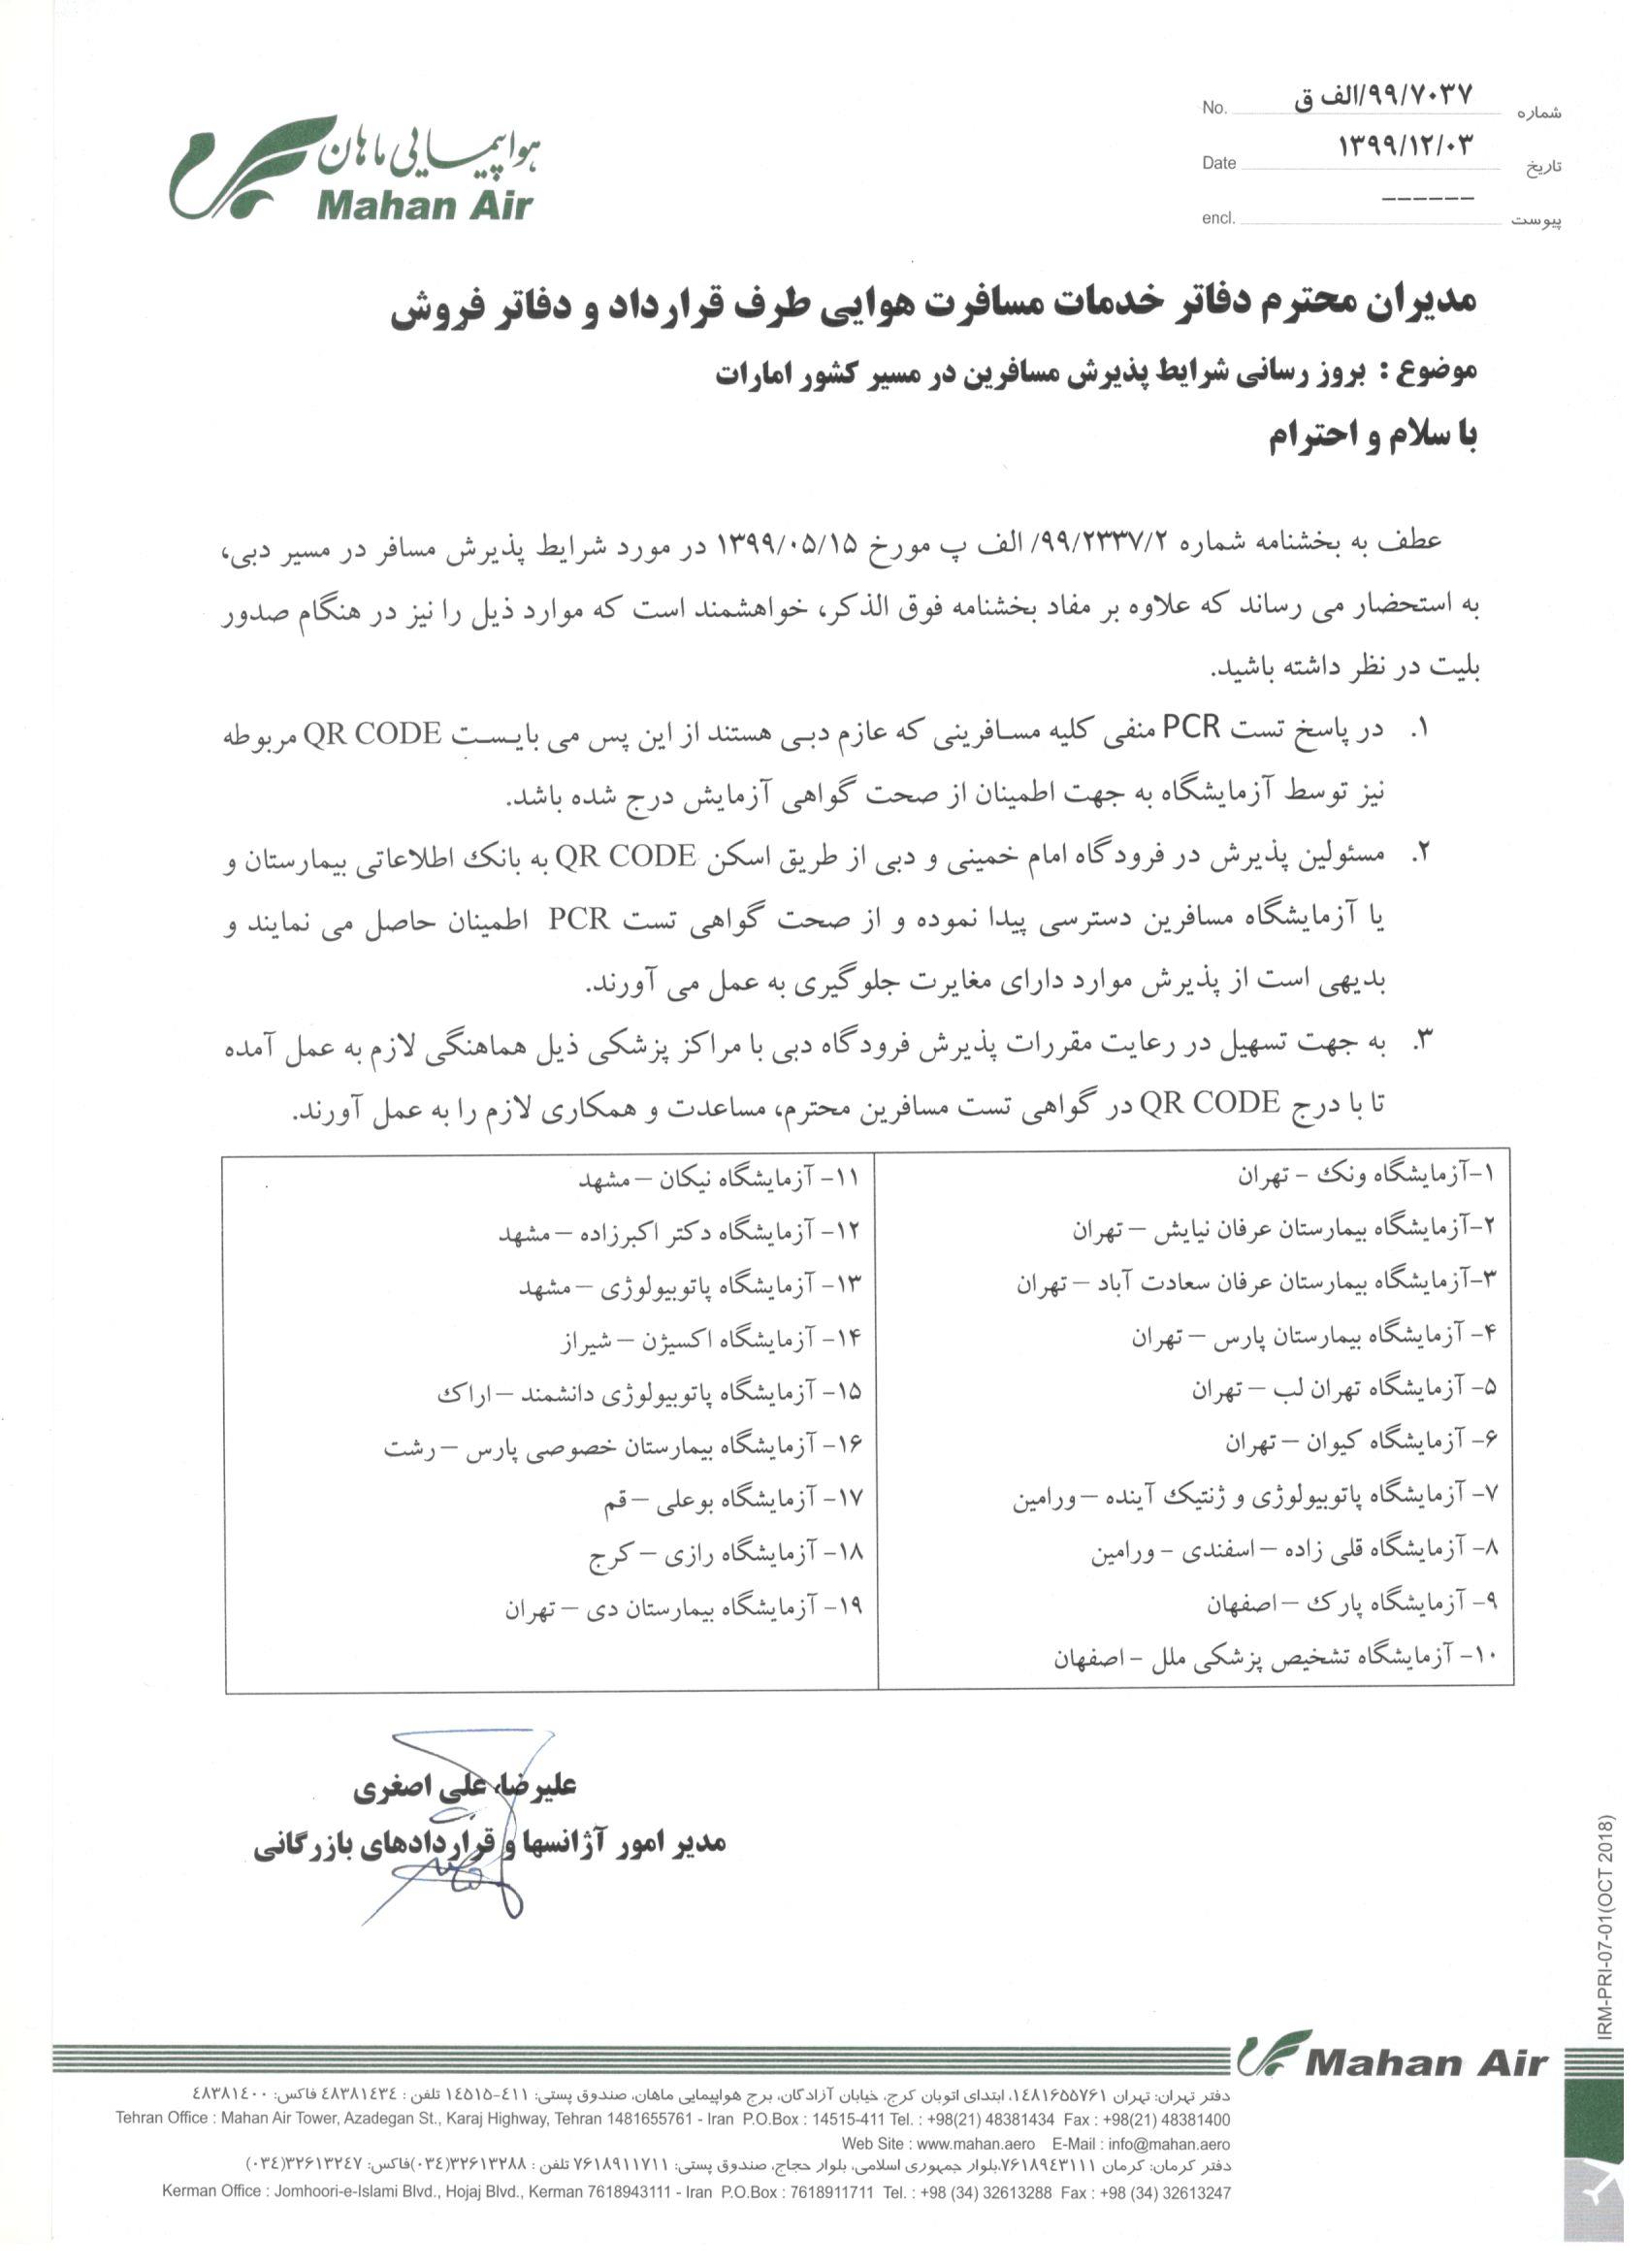 بخشنامه و اطلاعیه   هواپیمایی ماهان درباره بروز رسانی شرایط پذیرش مسافرین در مسیر کشور امارات. W5-7037